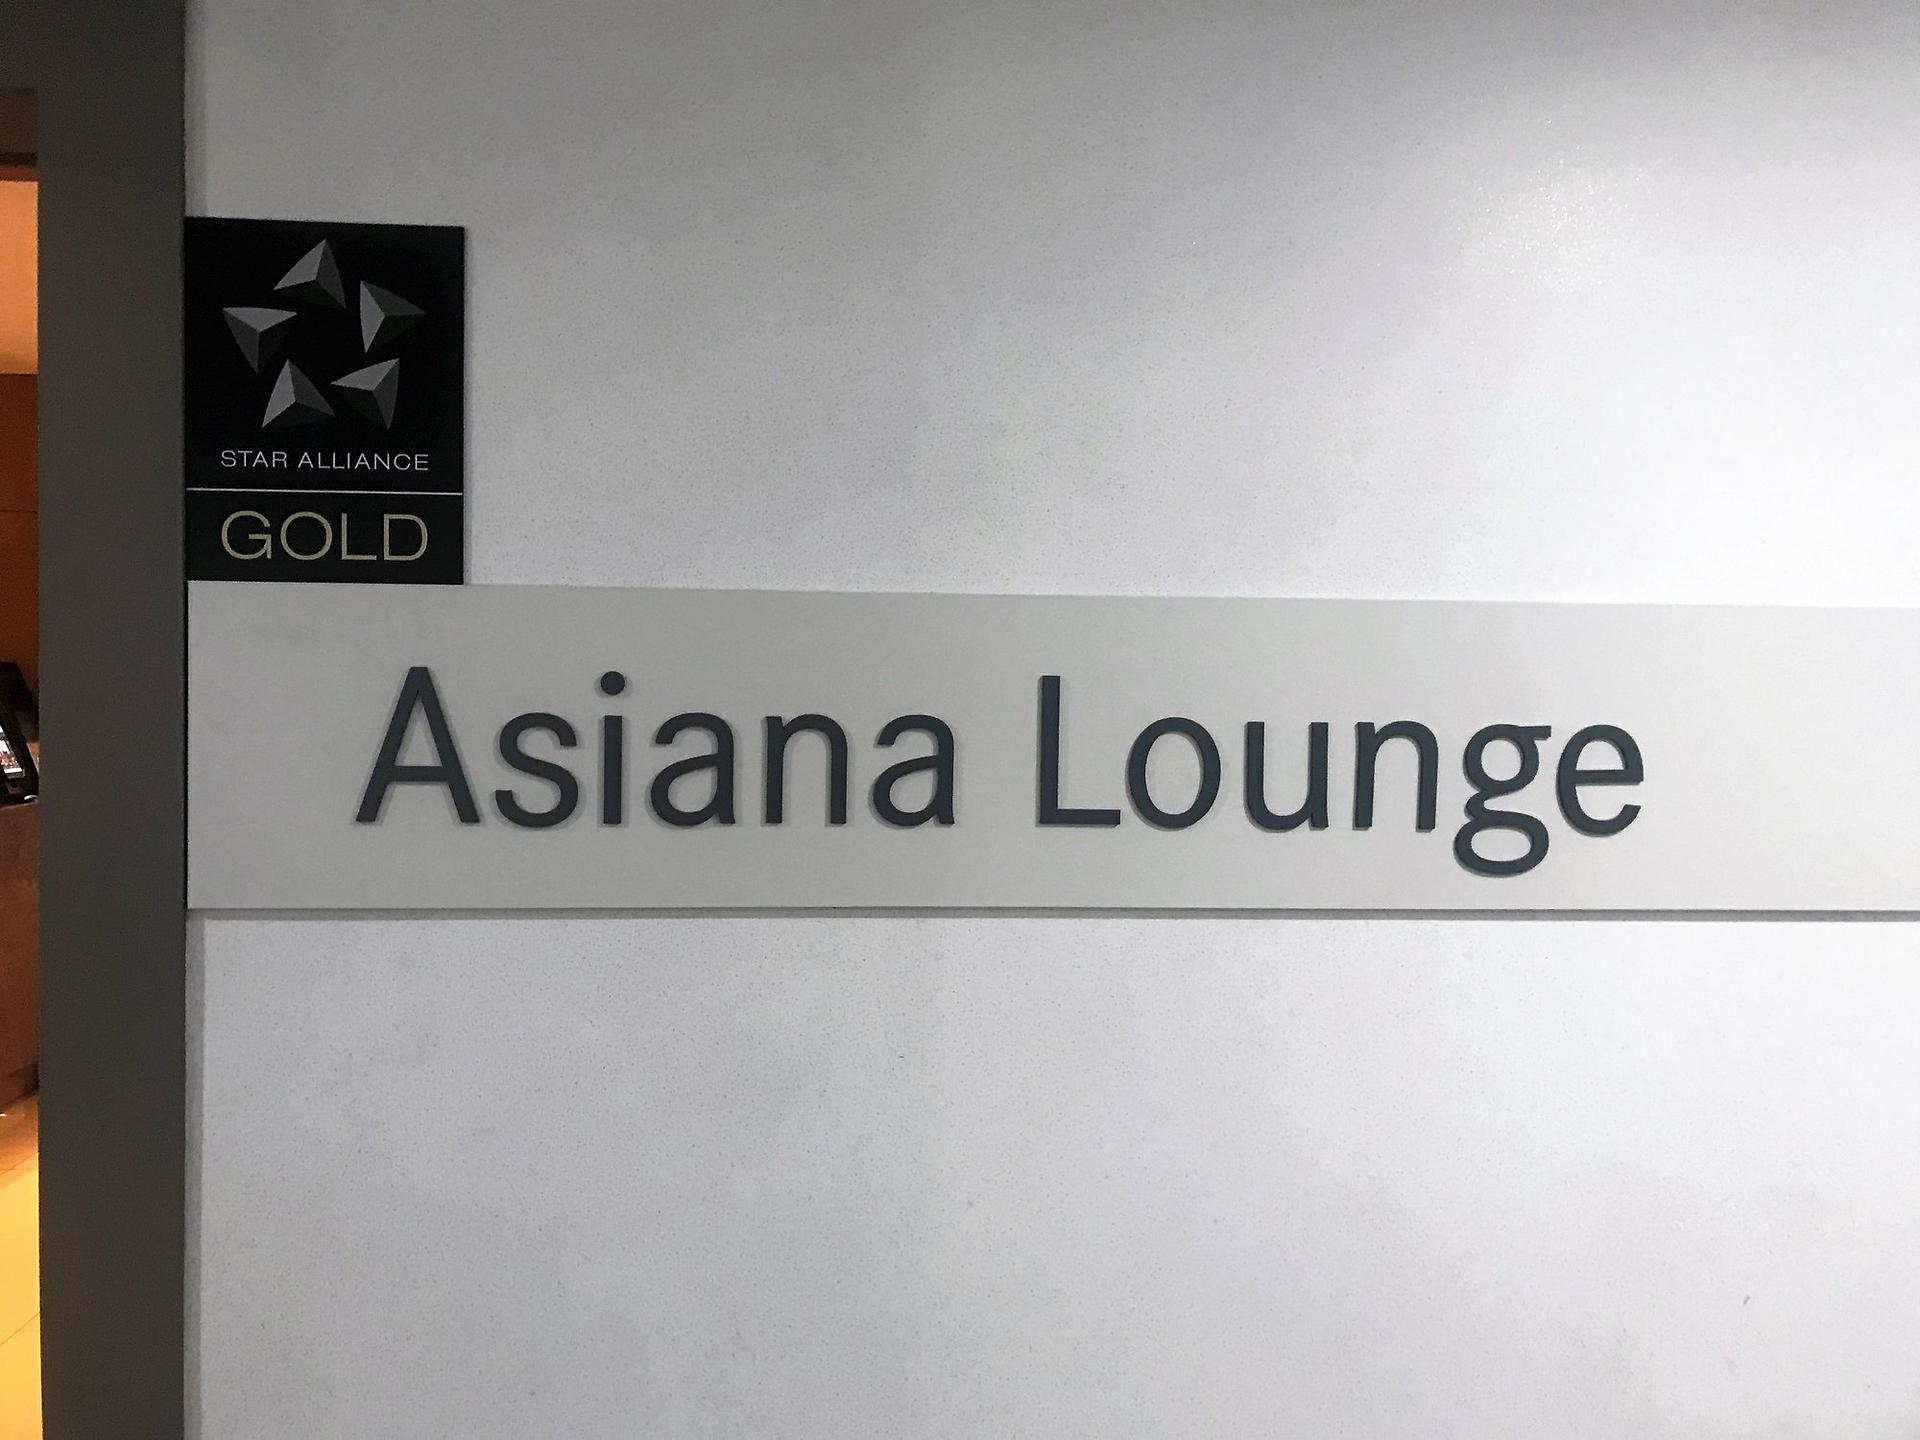 Asiana Lounge image 26 of 26